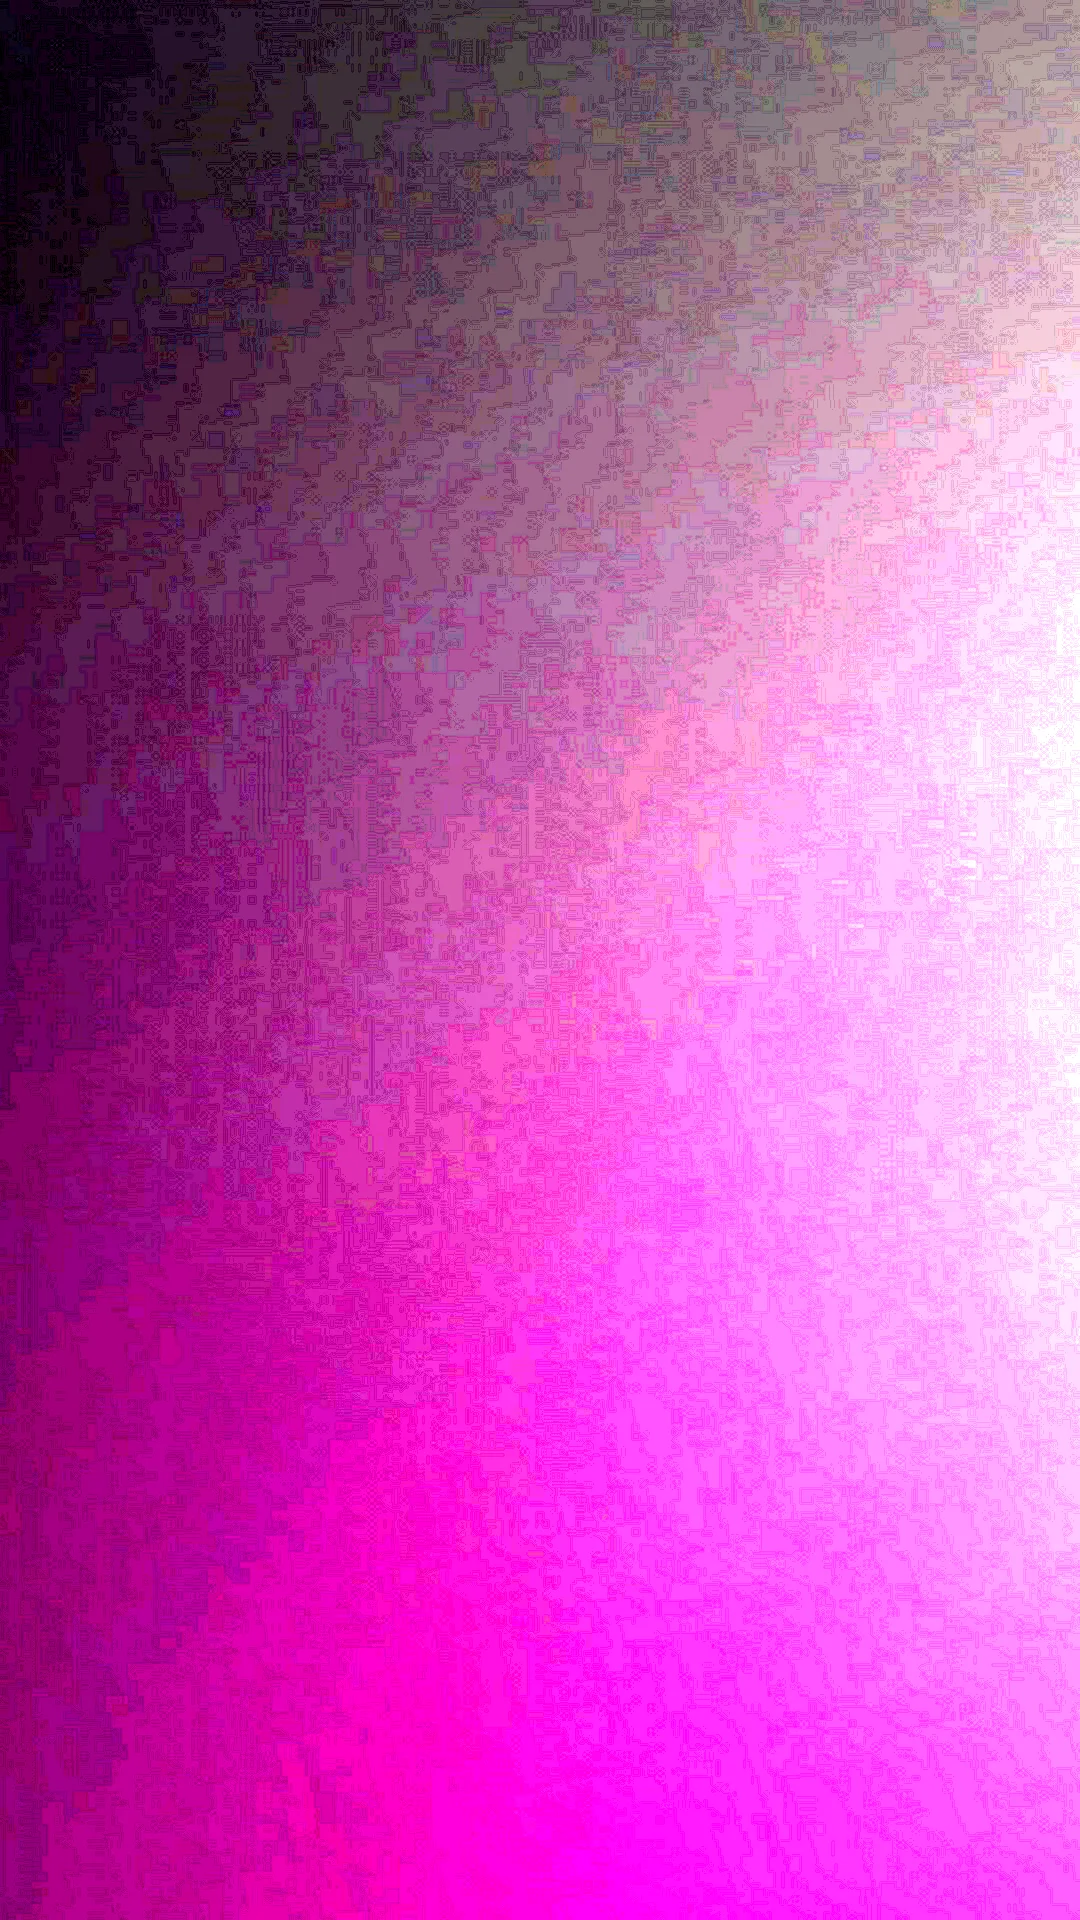 Тёмно-фиолетовый цвет